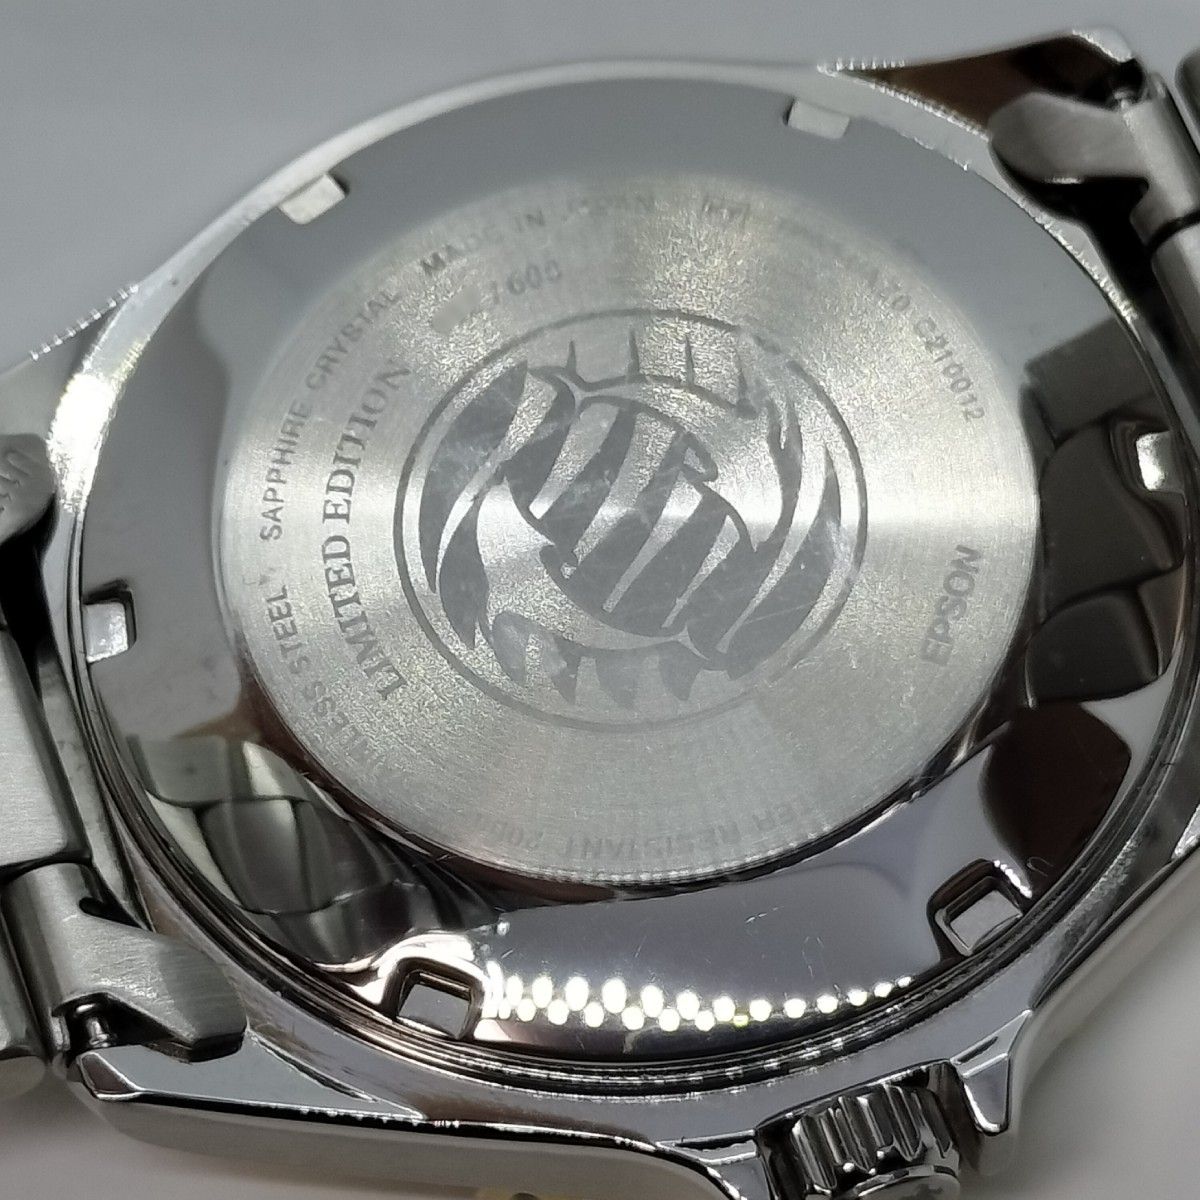 【美品】 ORIENT オリエントMAKOマコRN-AA0815L 600本限定モデル箱保付きメンズ腕時計